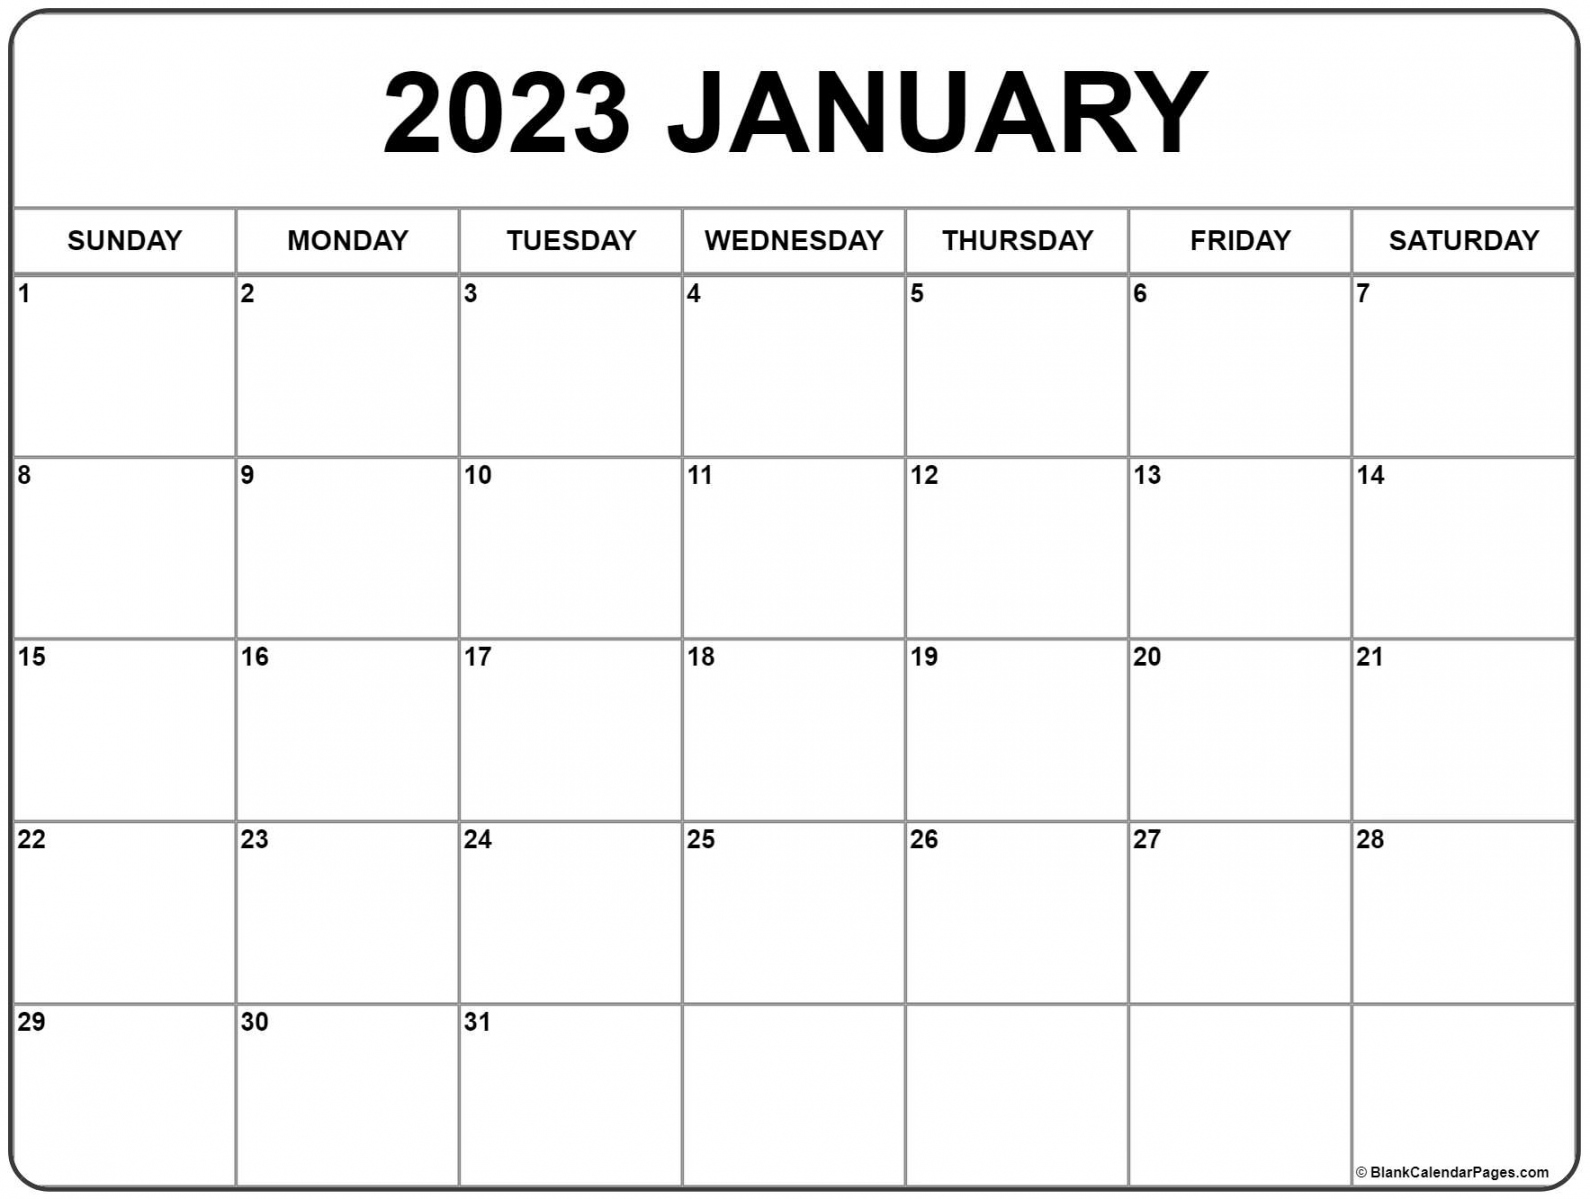 2023 Calendar Free Printable - Printable - January  calendar  free printable calendar